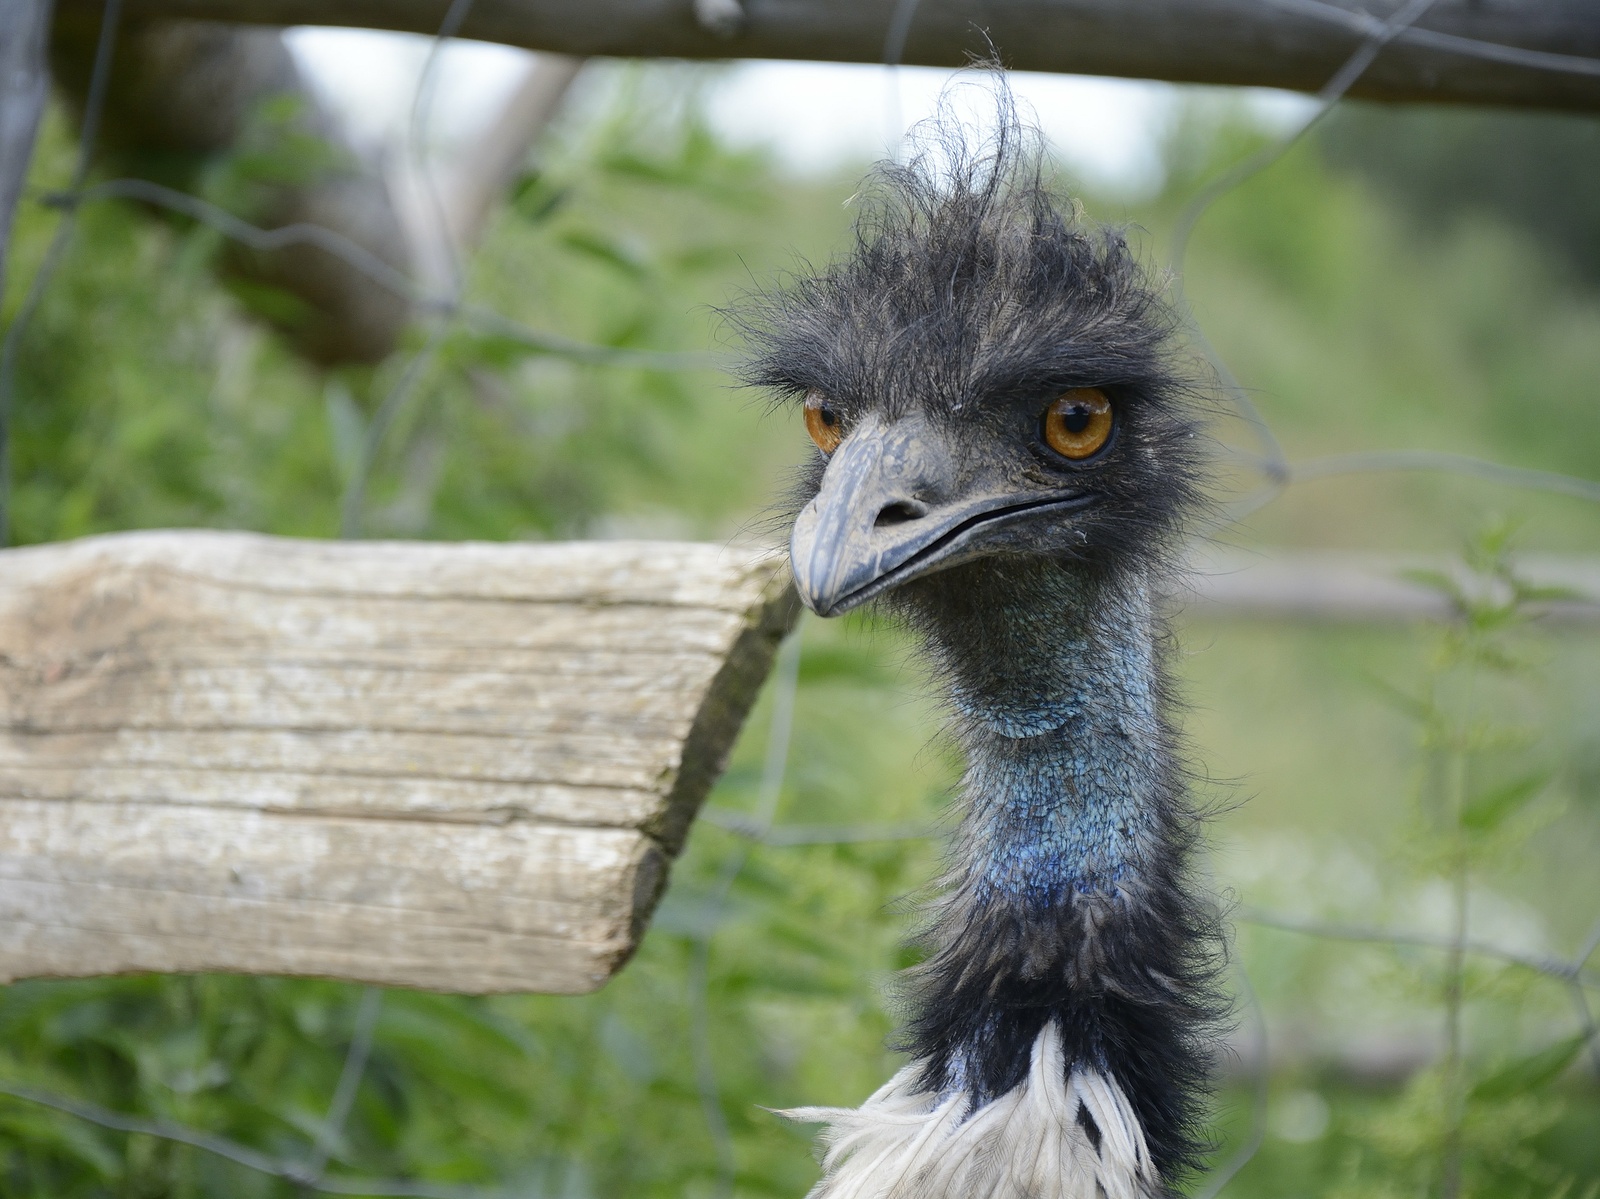 Na farmě u Hýskova pes usmrtil pštrosa emu. Napadený pták vykrvácel z hrdla  - Berounský deník